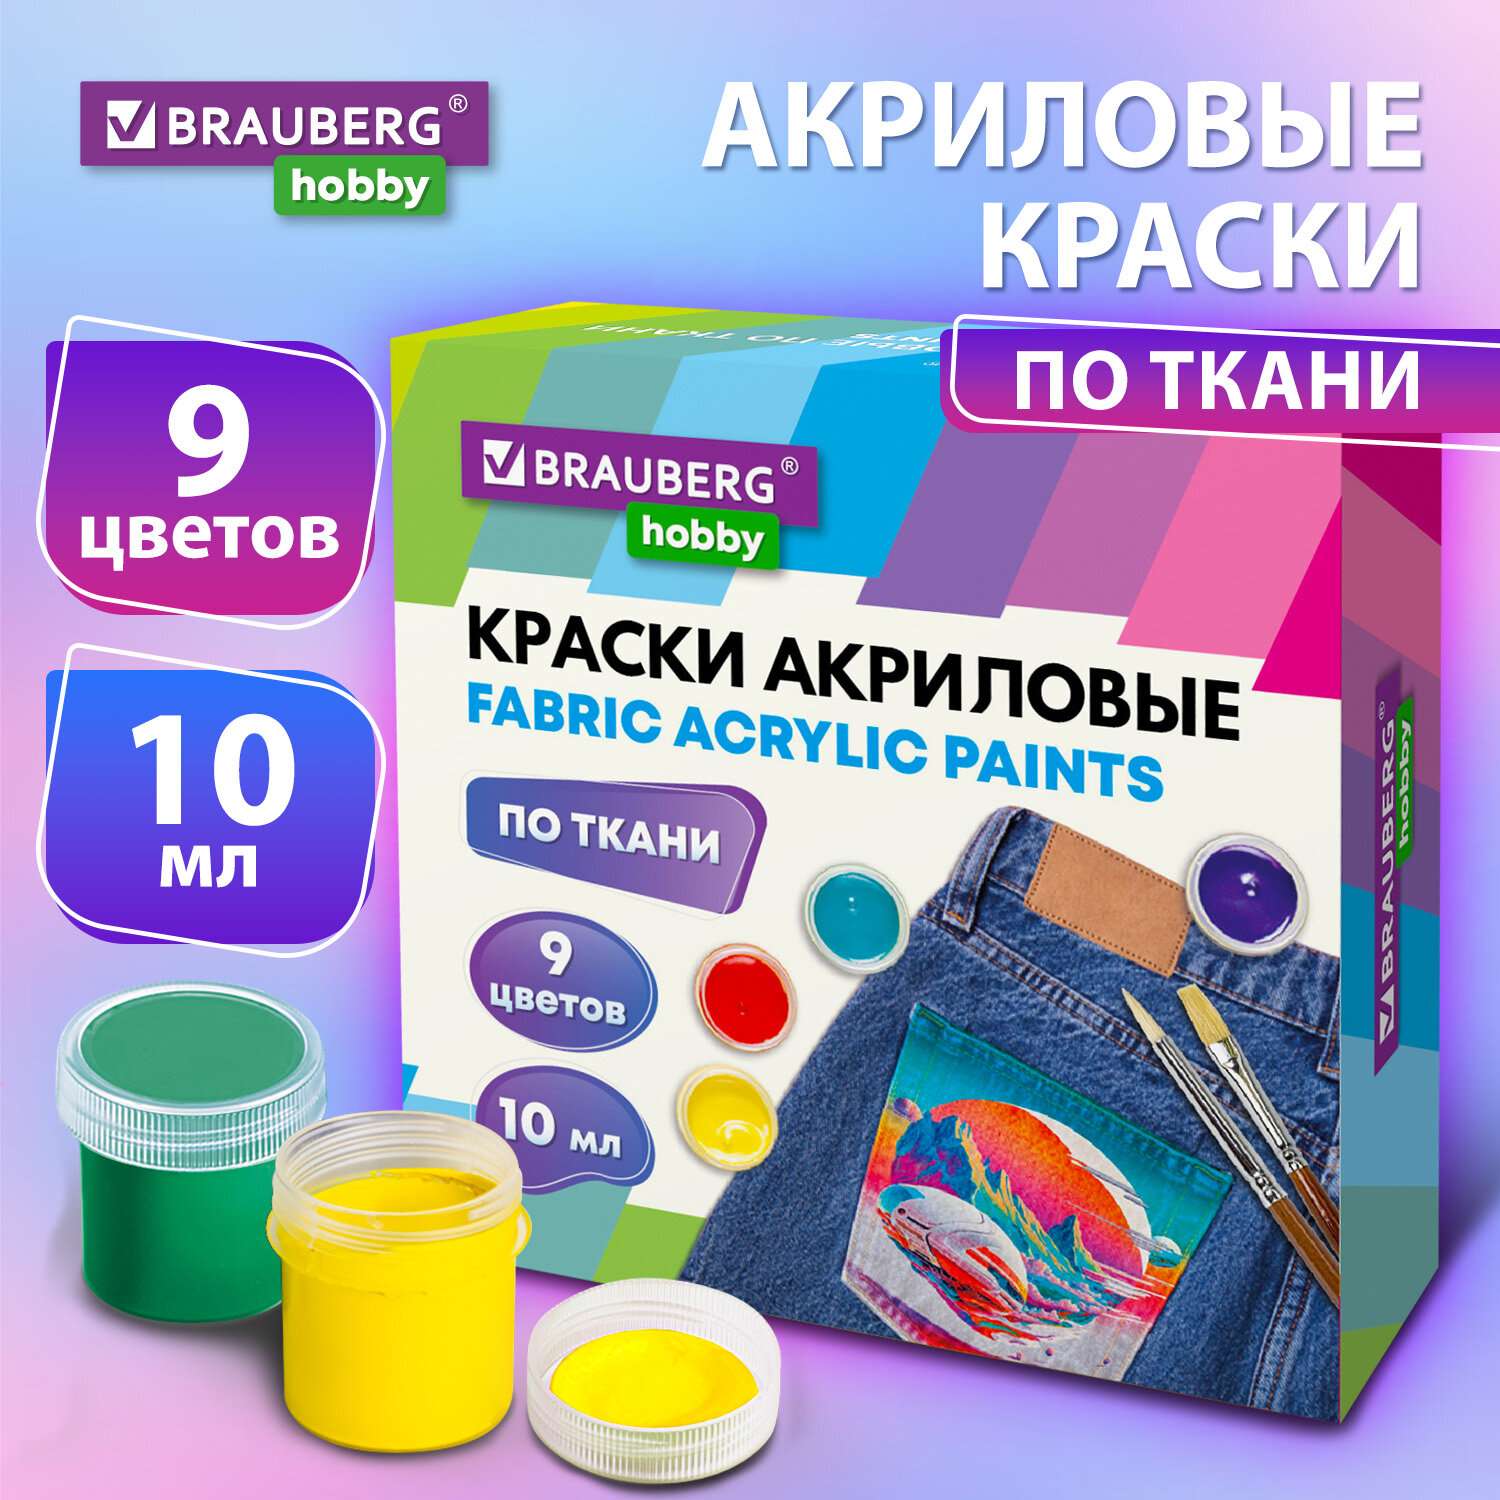 Акриловые краски Brauberg для ткани набор художественные 9 цветов - фото 2